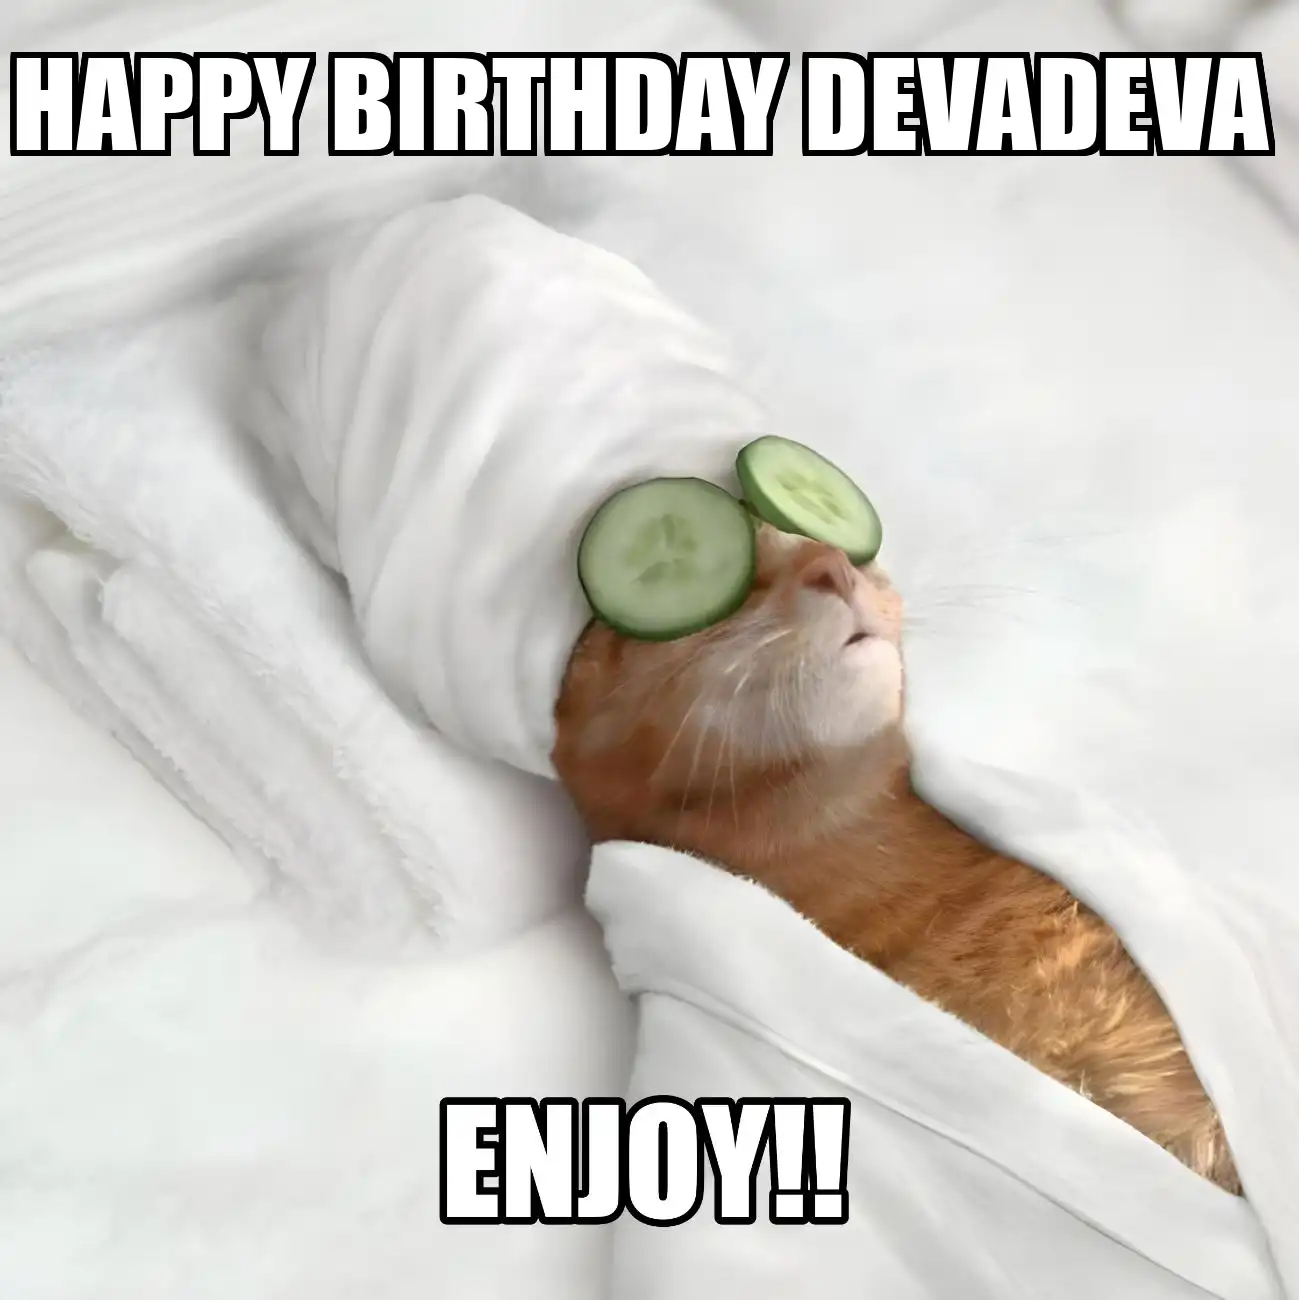 Happy Birthday Devadeva Enjoy Cat Meme